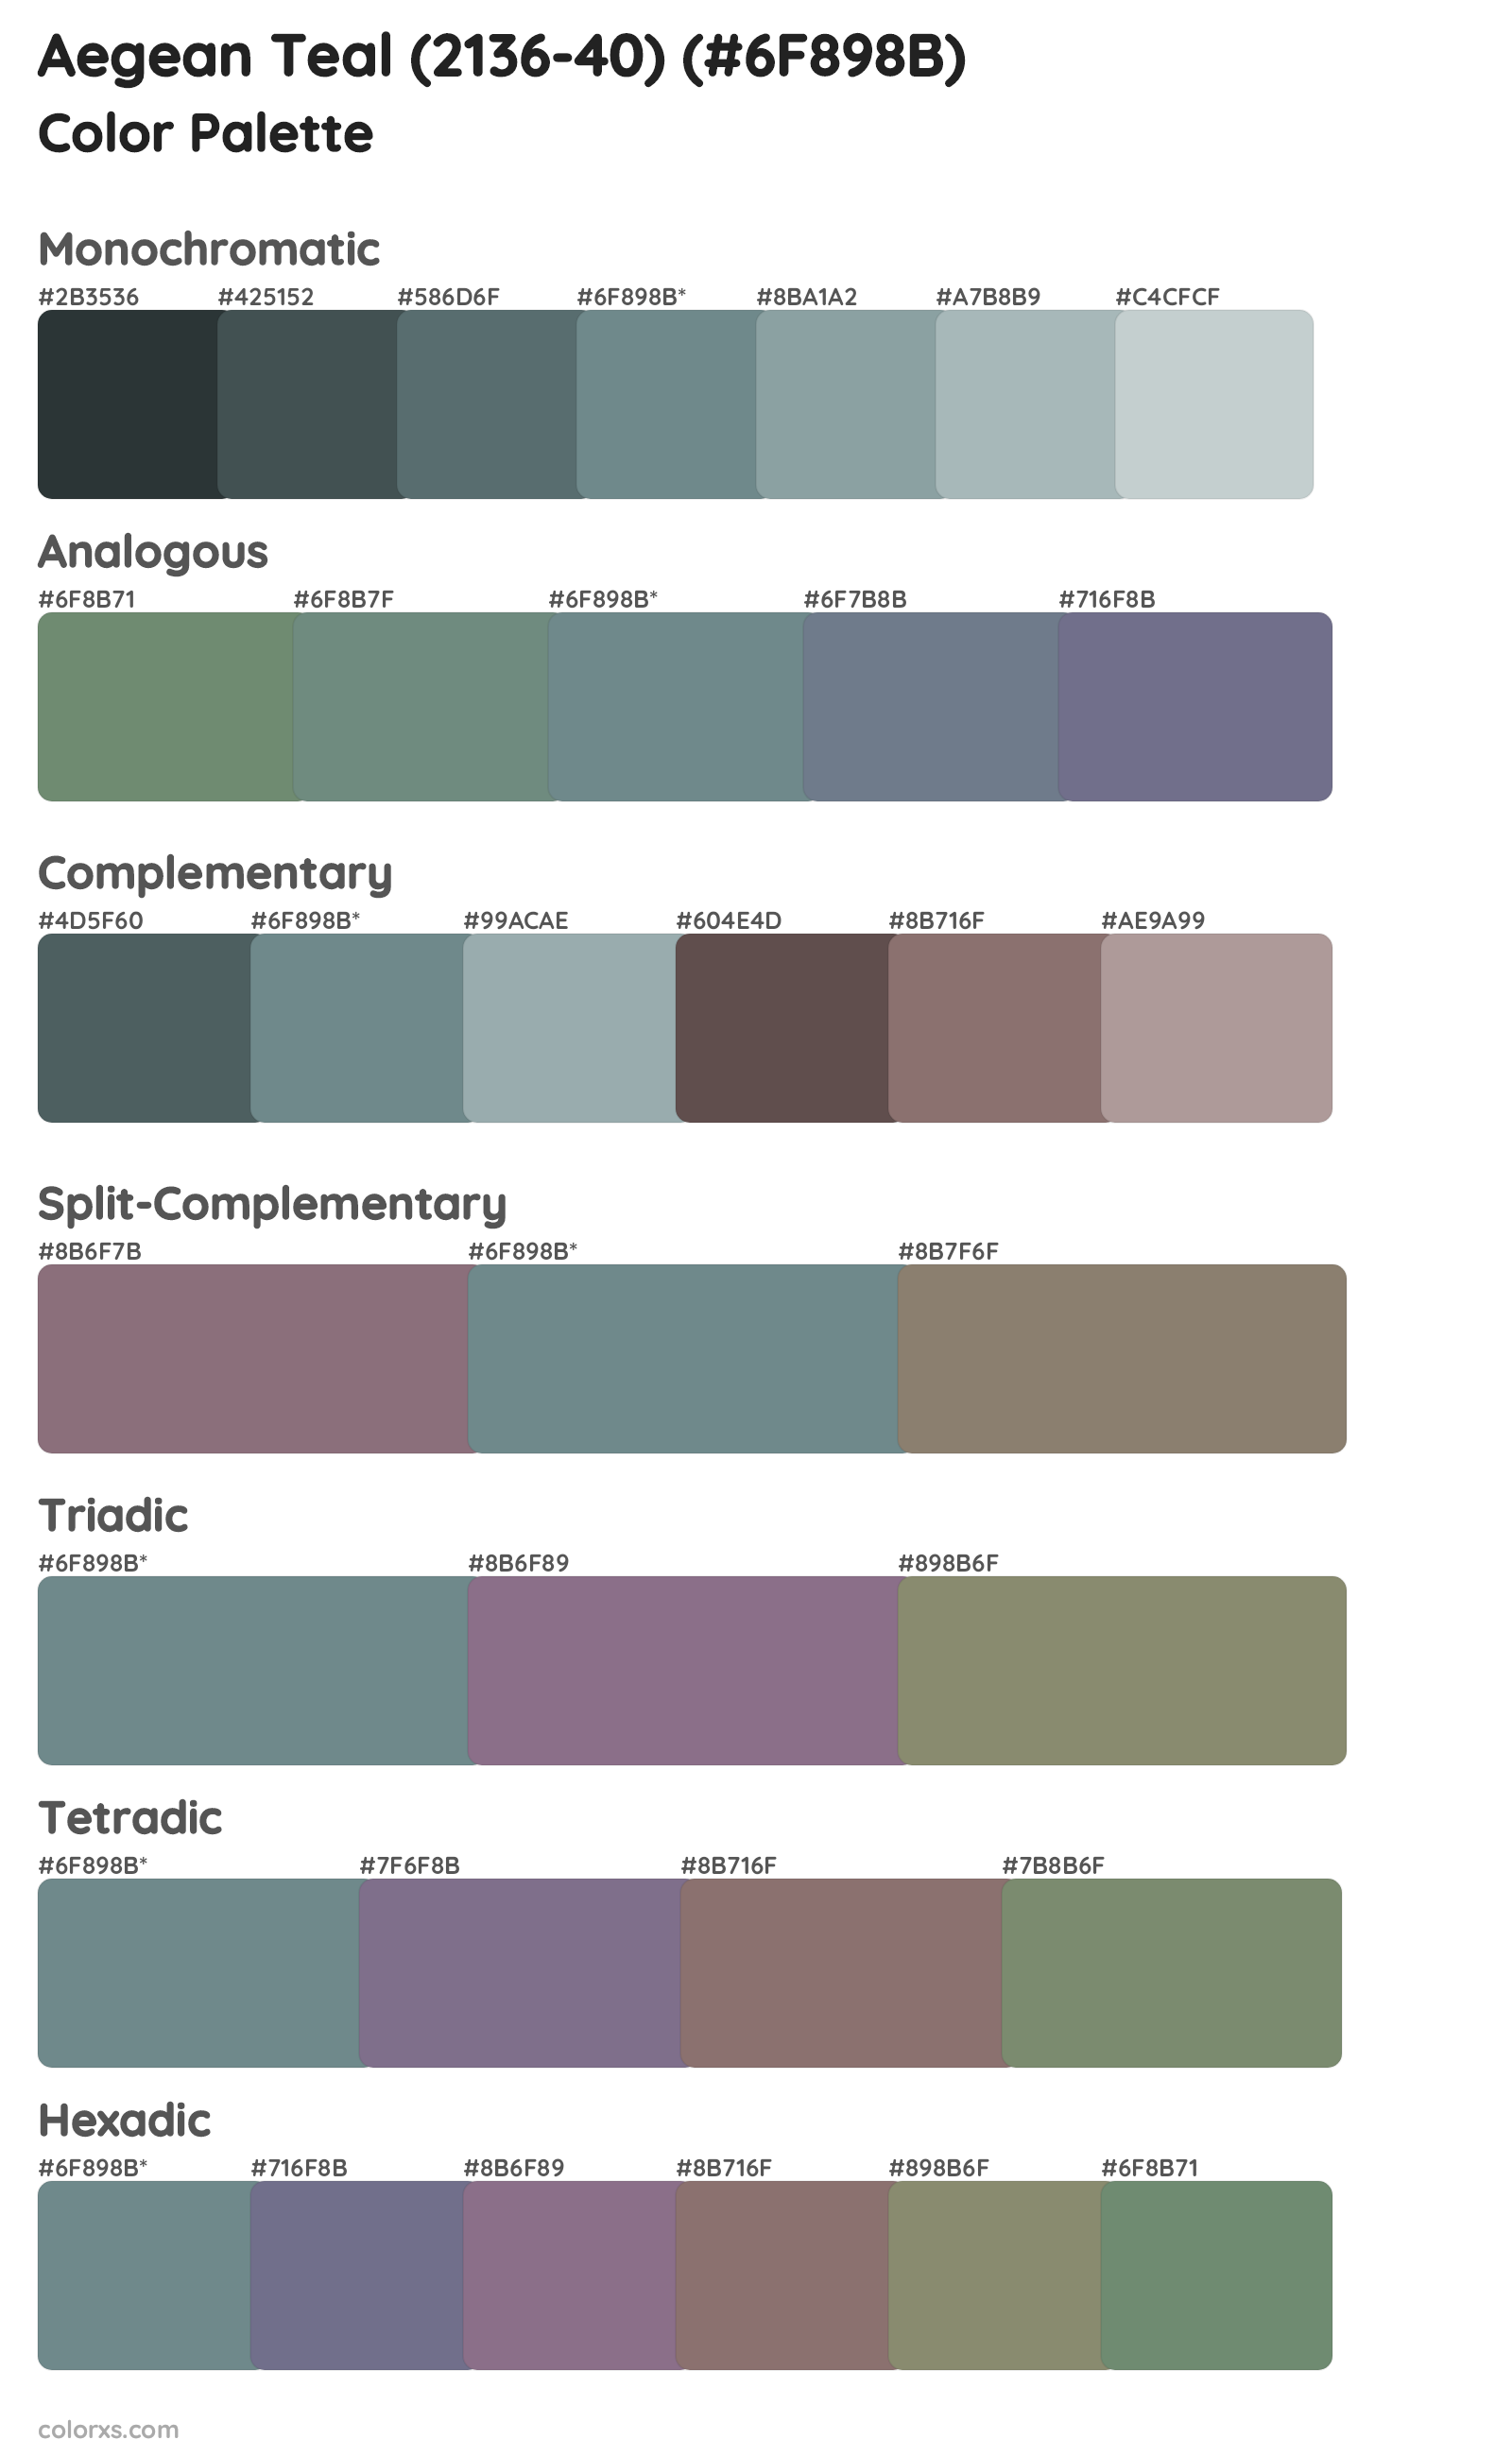 Aegean Teal (2136-40) Color Scheme Palettes